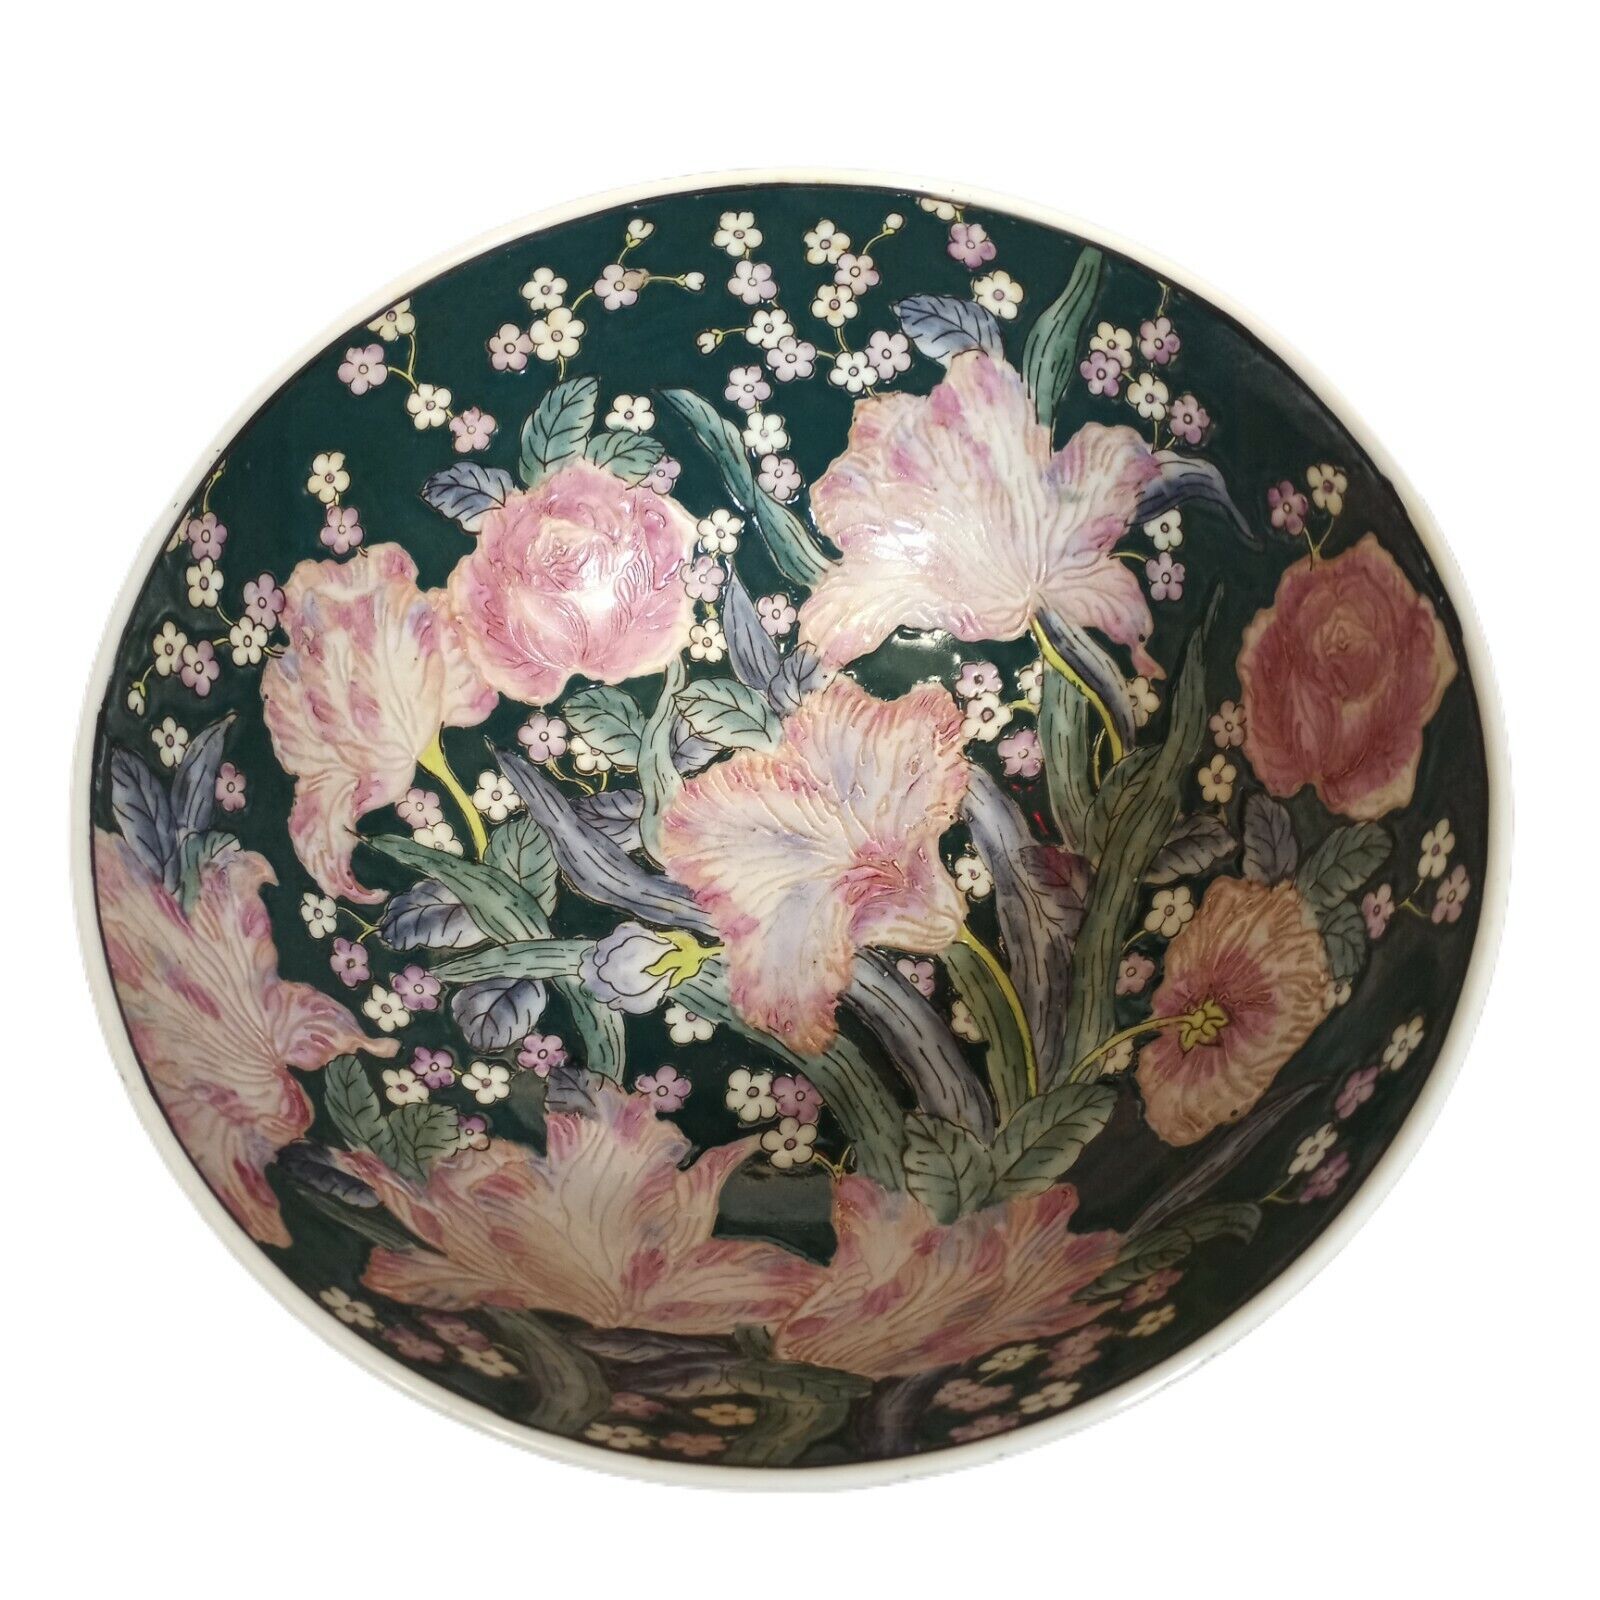 Vtg Porcelain Macau Style Asian Hand Painted Floral Petunia Decorative Bowl